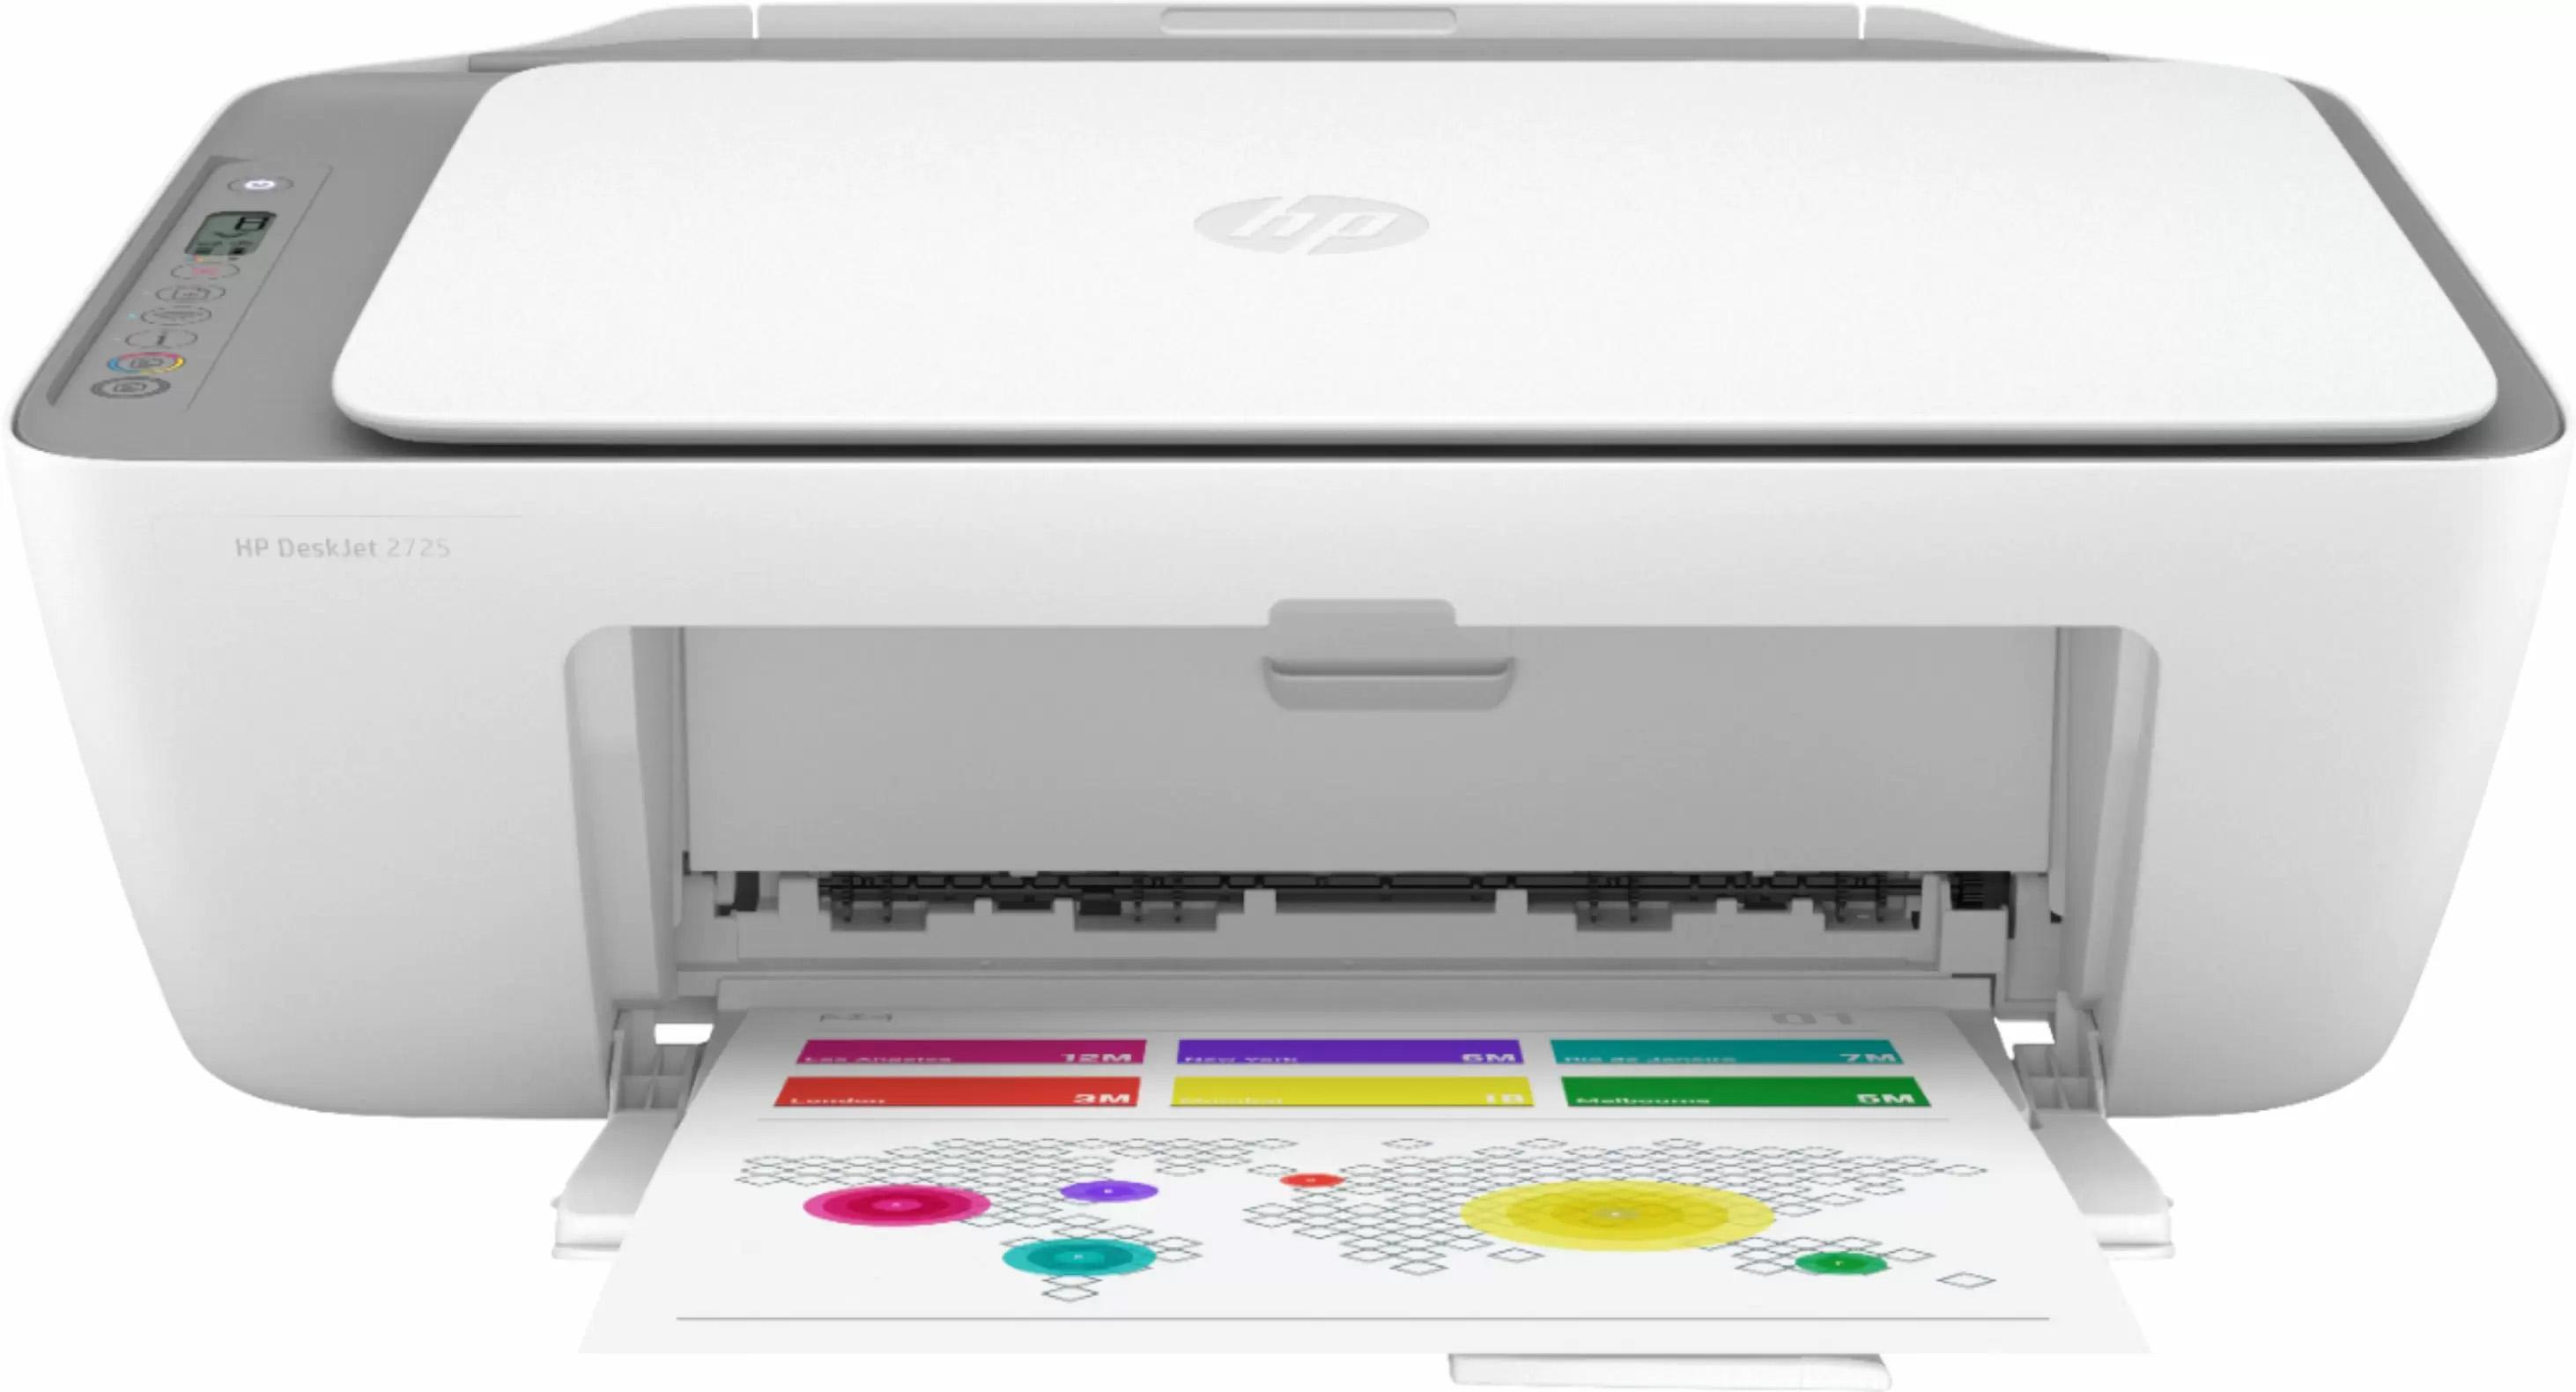 HP DeskJet 2725 Wireless AIO Inkjet Printer for $24.99